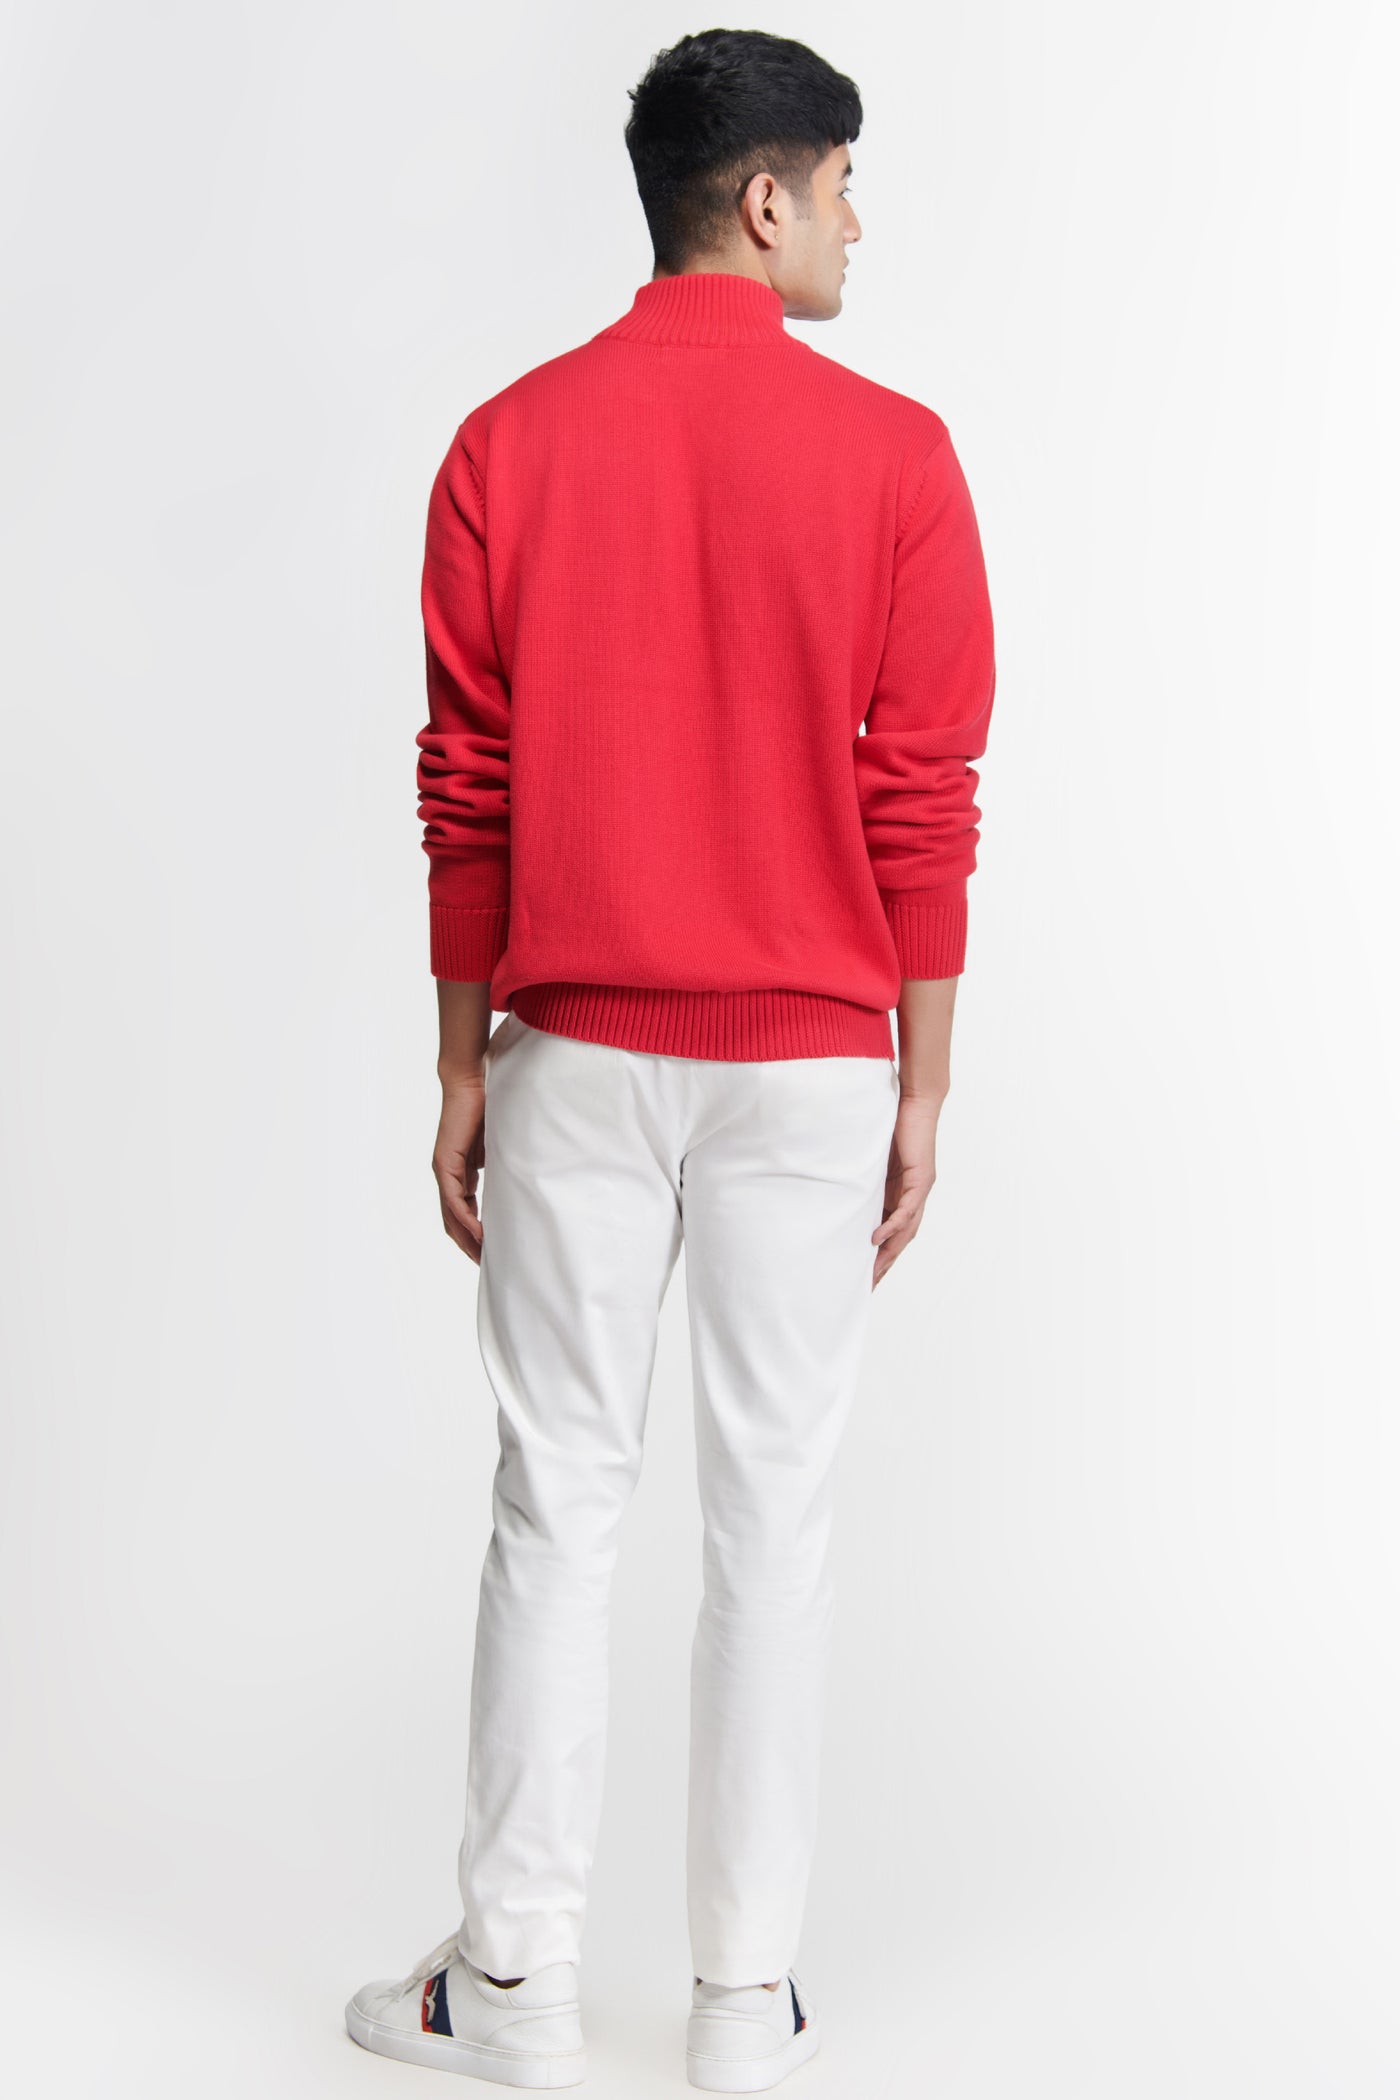 Shantanu & Nikhil Menswear SNCC Red Patch Logo Sweater indian designer wear online shopping melange singapore